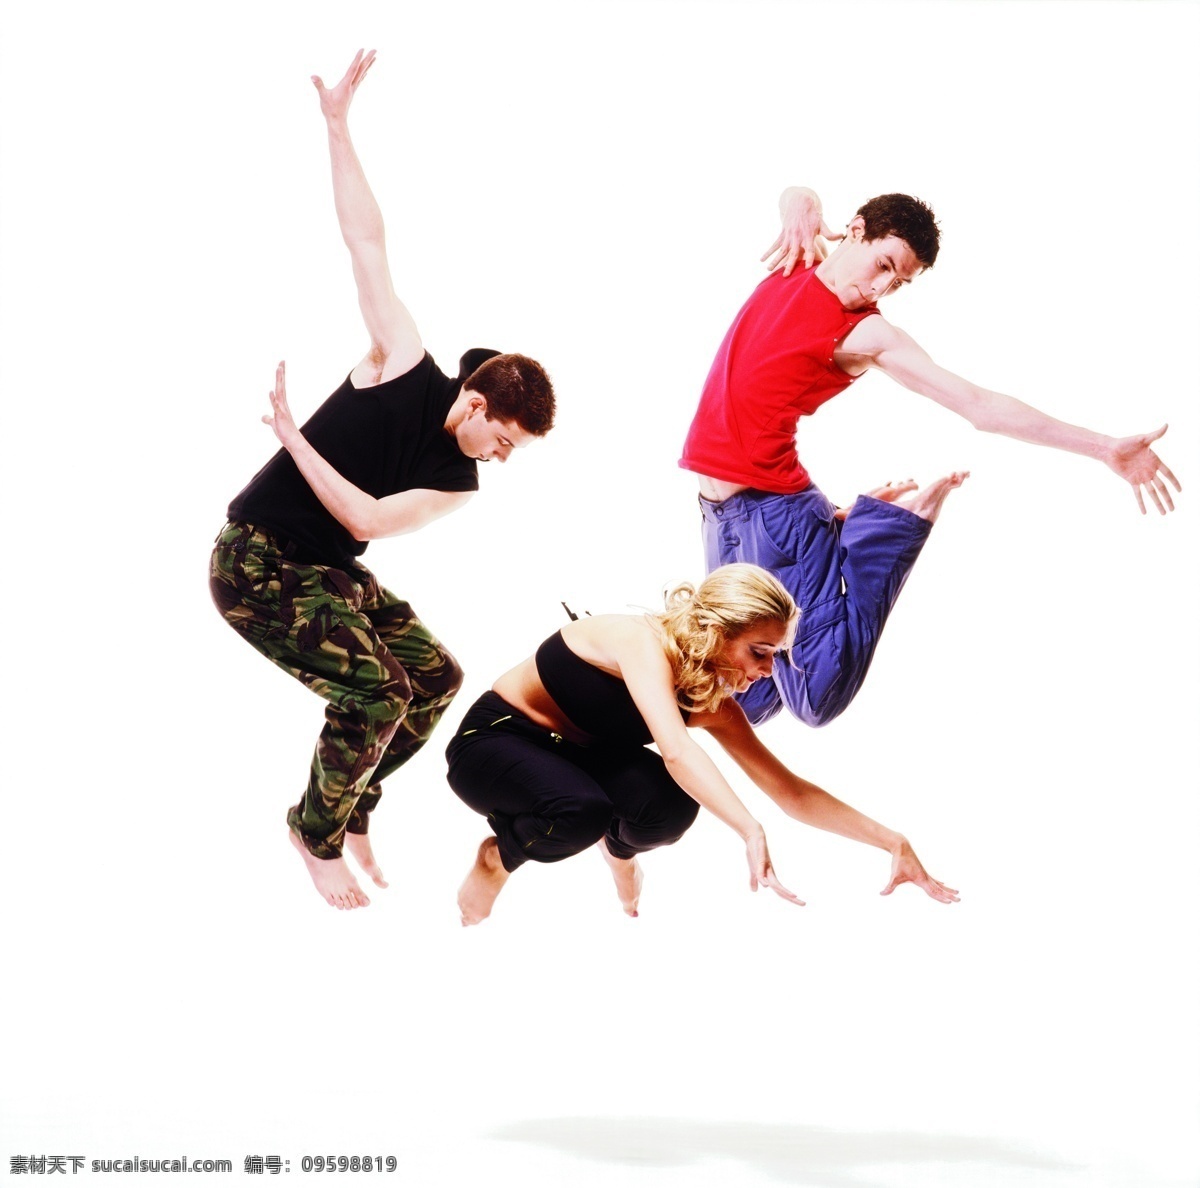 三个 舞者 跳舞 人物 女人 外国女人 美女 芭蕾 街舞 舞蹈 激情 动作 舞蹈动作 舞蹈爱好者 三个人 三个人跳舞 男人 高清图片 生活人物 人物图片